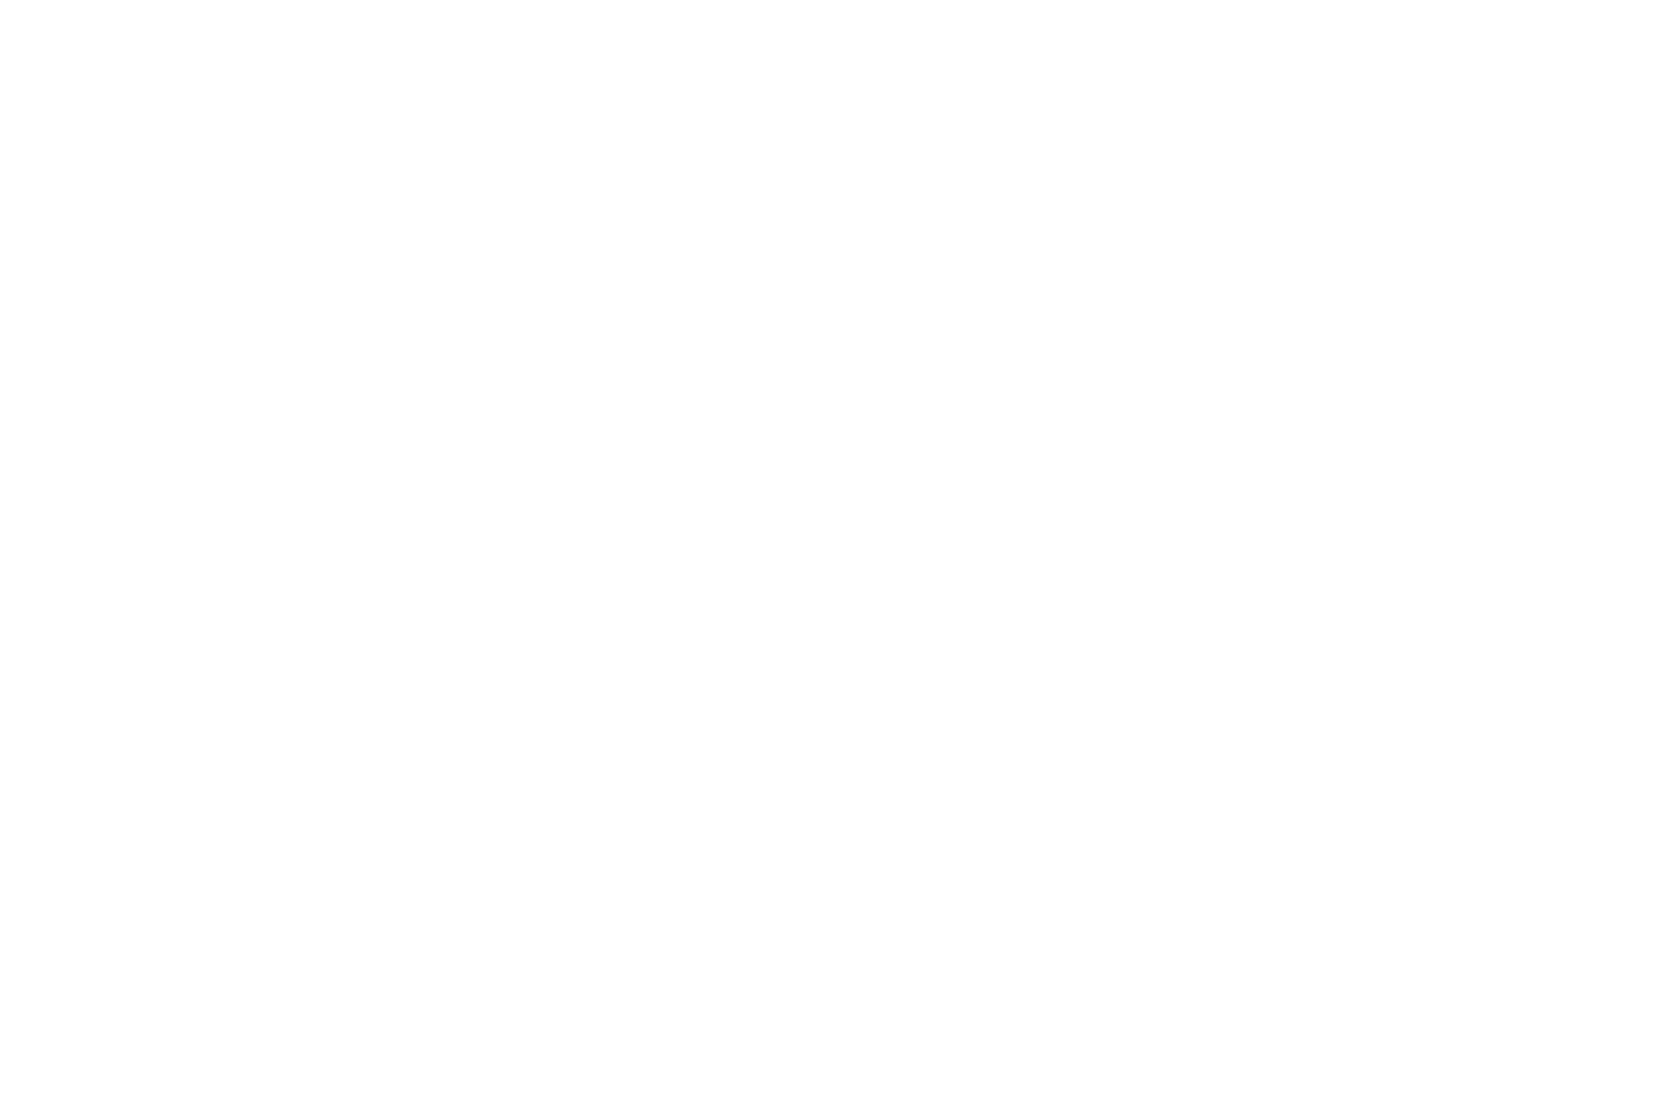 Кейс сервиса BRANDNATION - Дизайн каталога поставщика оборудования. Брендинговое агентство BRANDNATION в Москве и Санкт-Петербурге. Услуги: разработка логотипа и фирменного стиля, дизайн упаковки, брендбук, ребрендинг, разработка сайта.